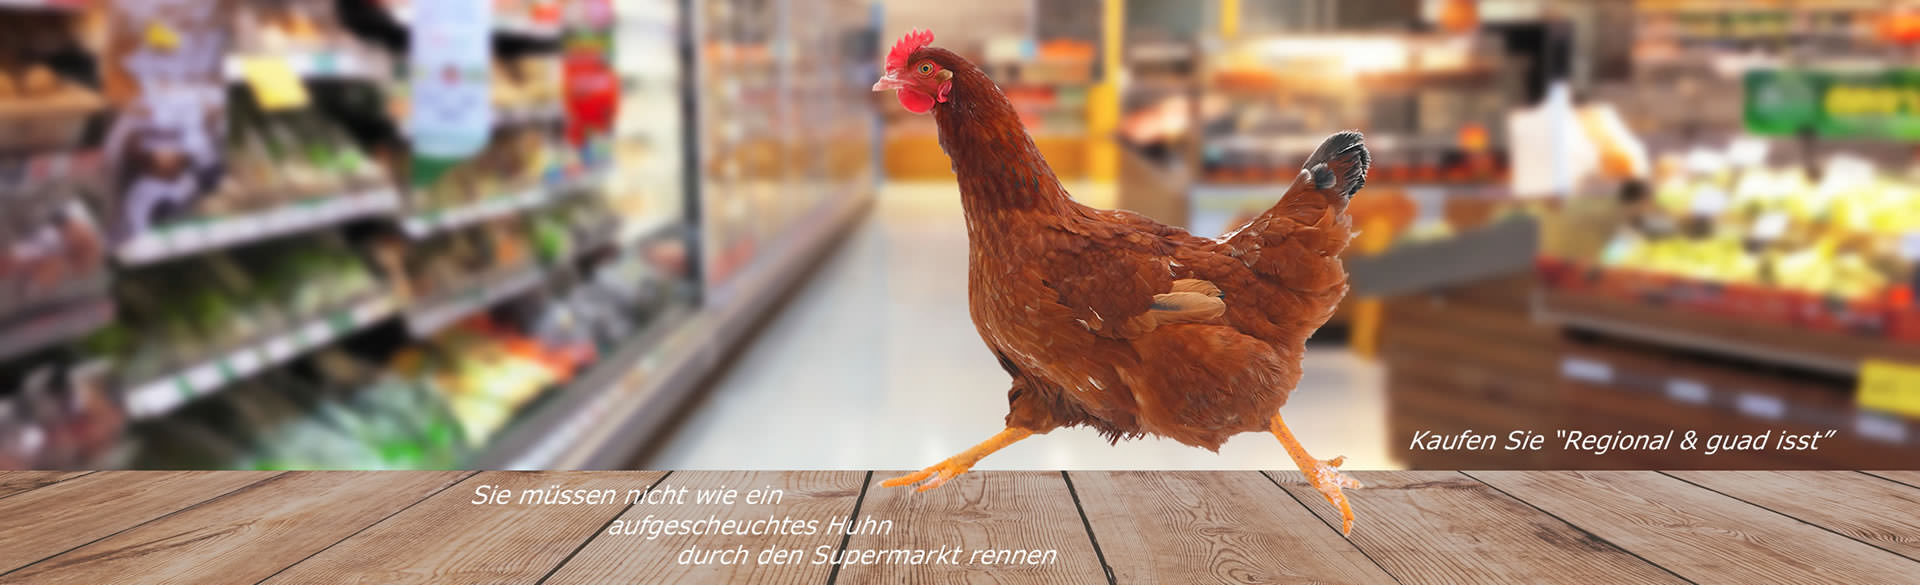 Huhn im Supermarkt